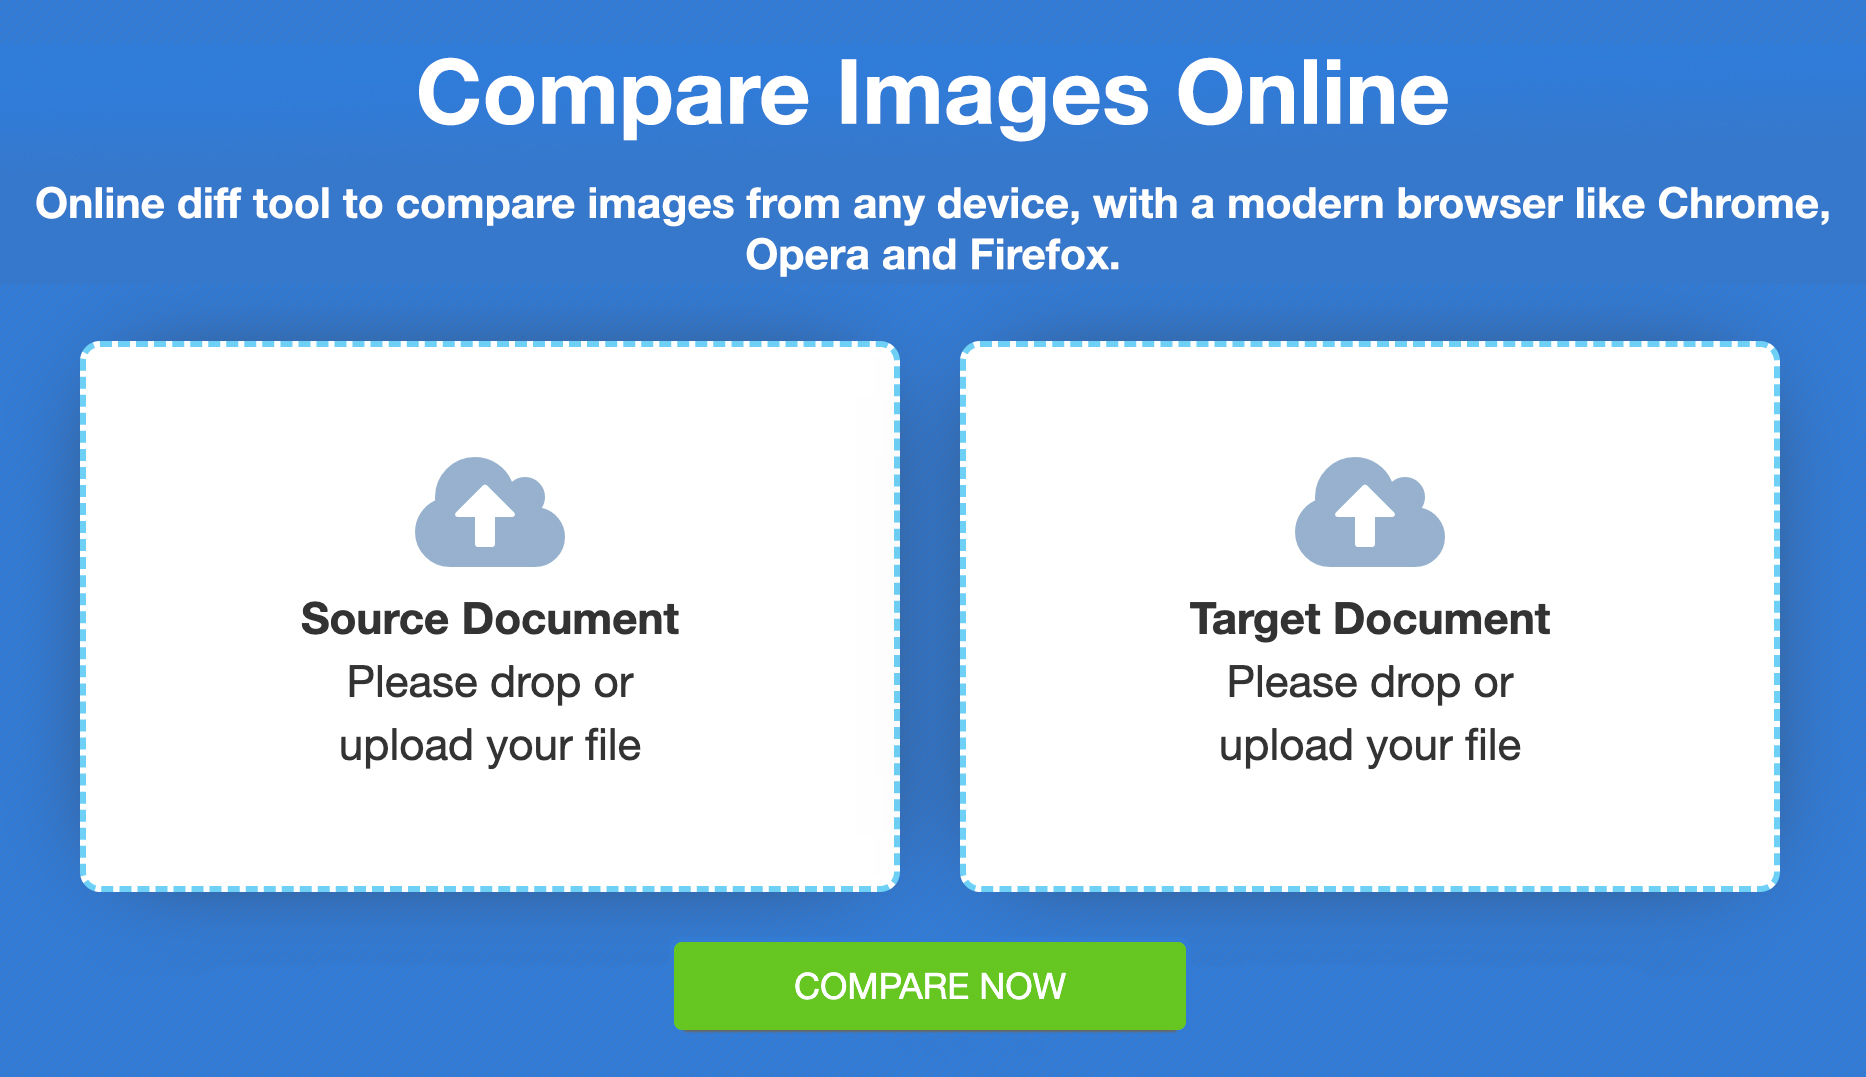 Comparar archivos de imagen - Comparación gratuita en línea